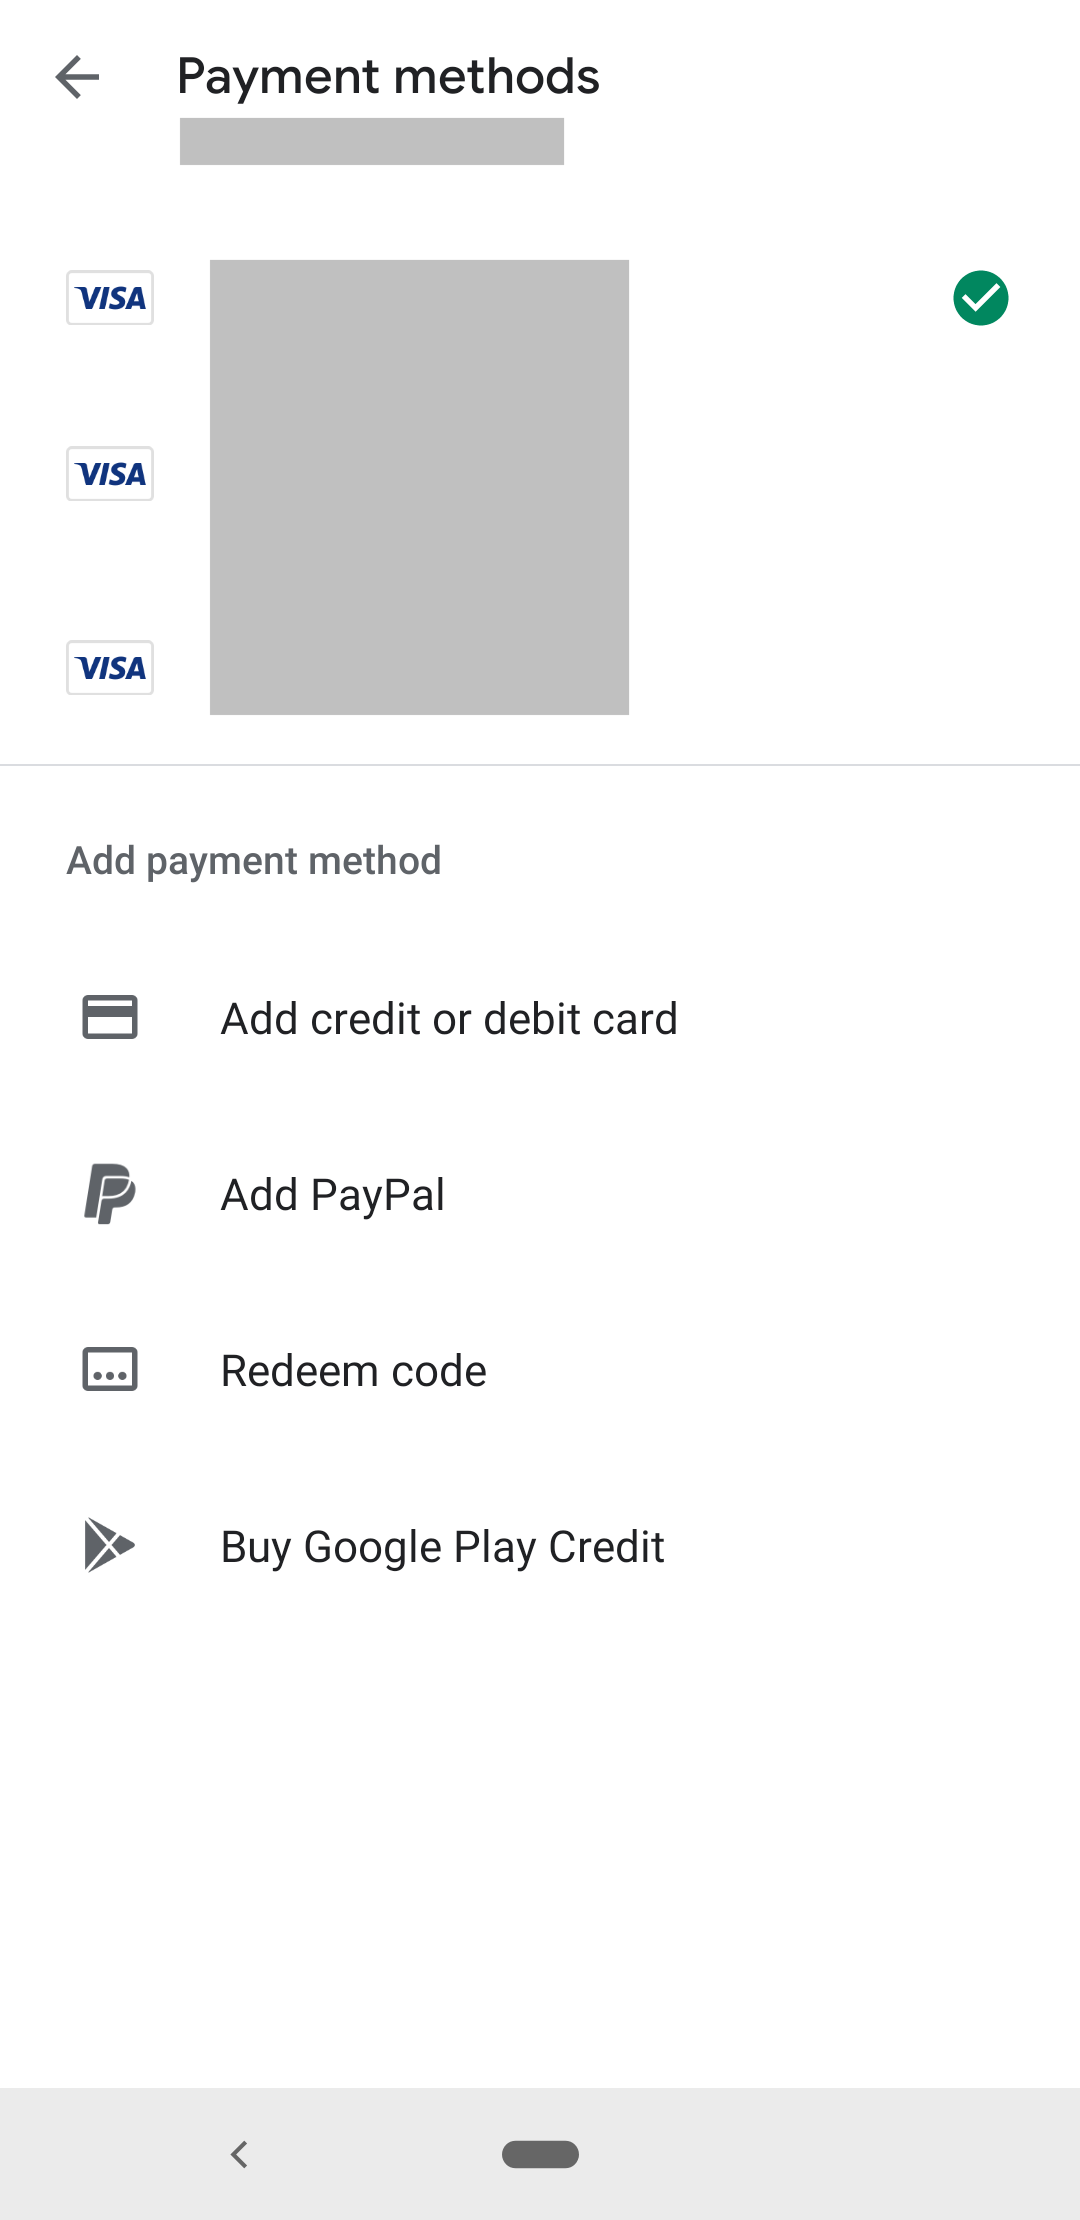 Tela que lista as formas de pagamento para uma compra no aplicativo